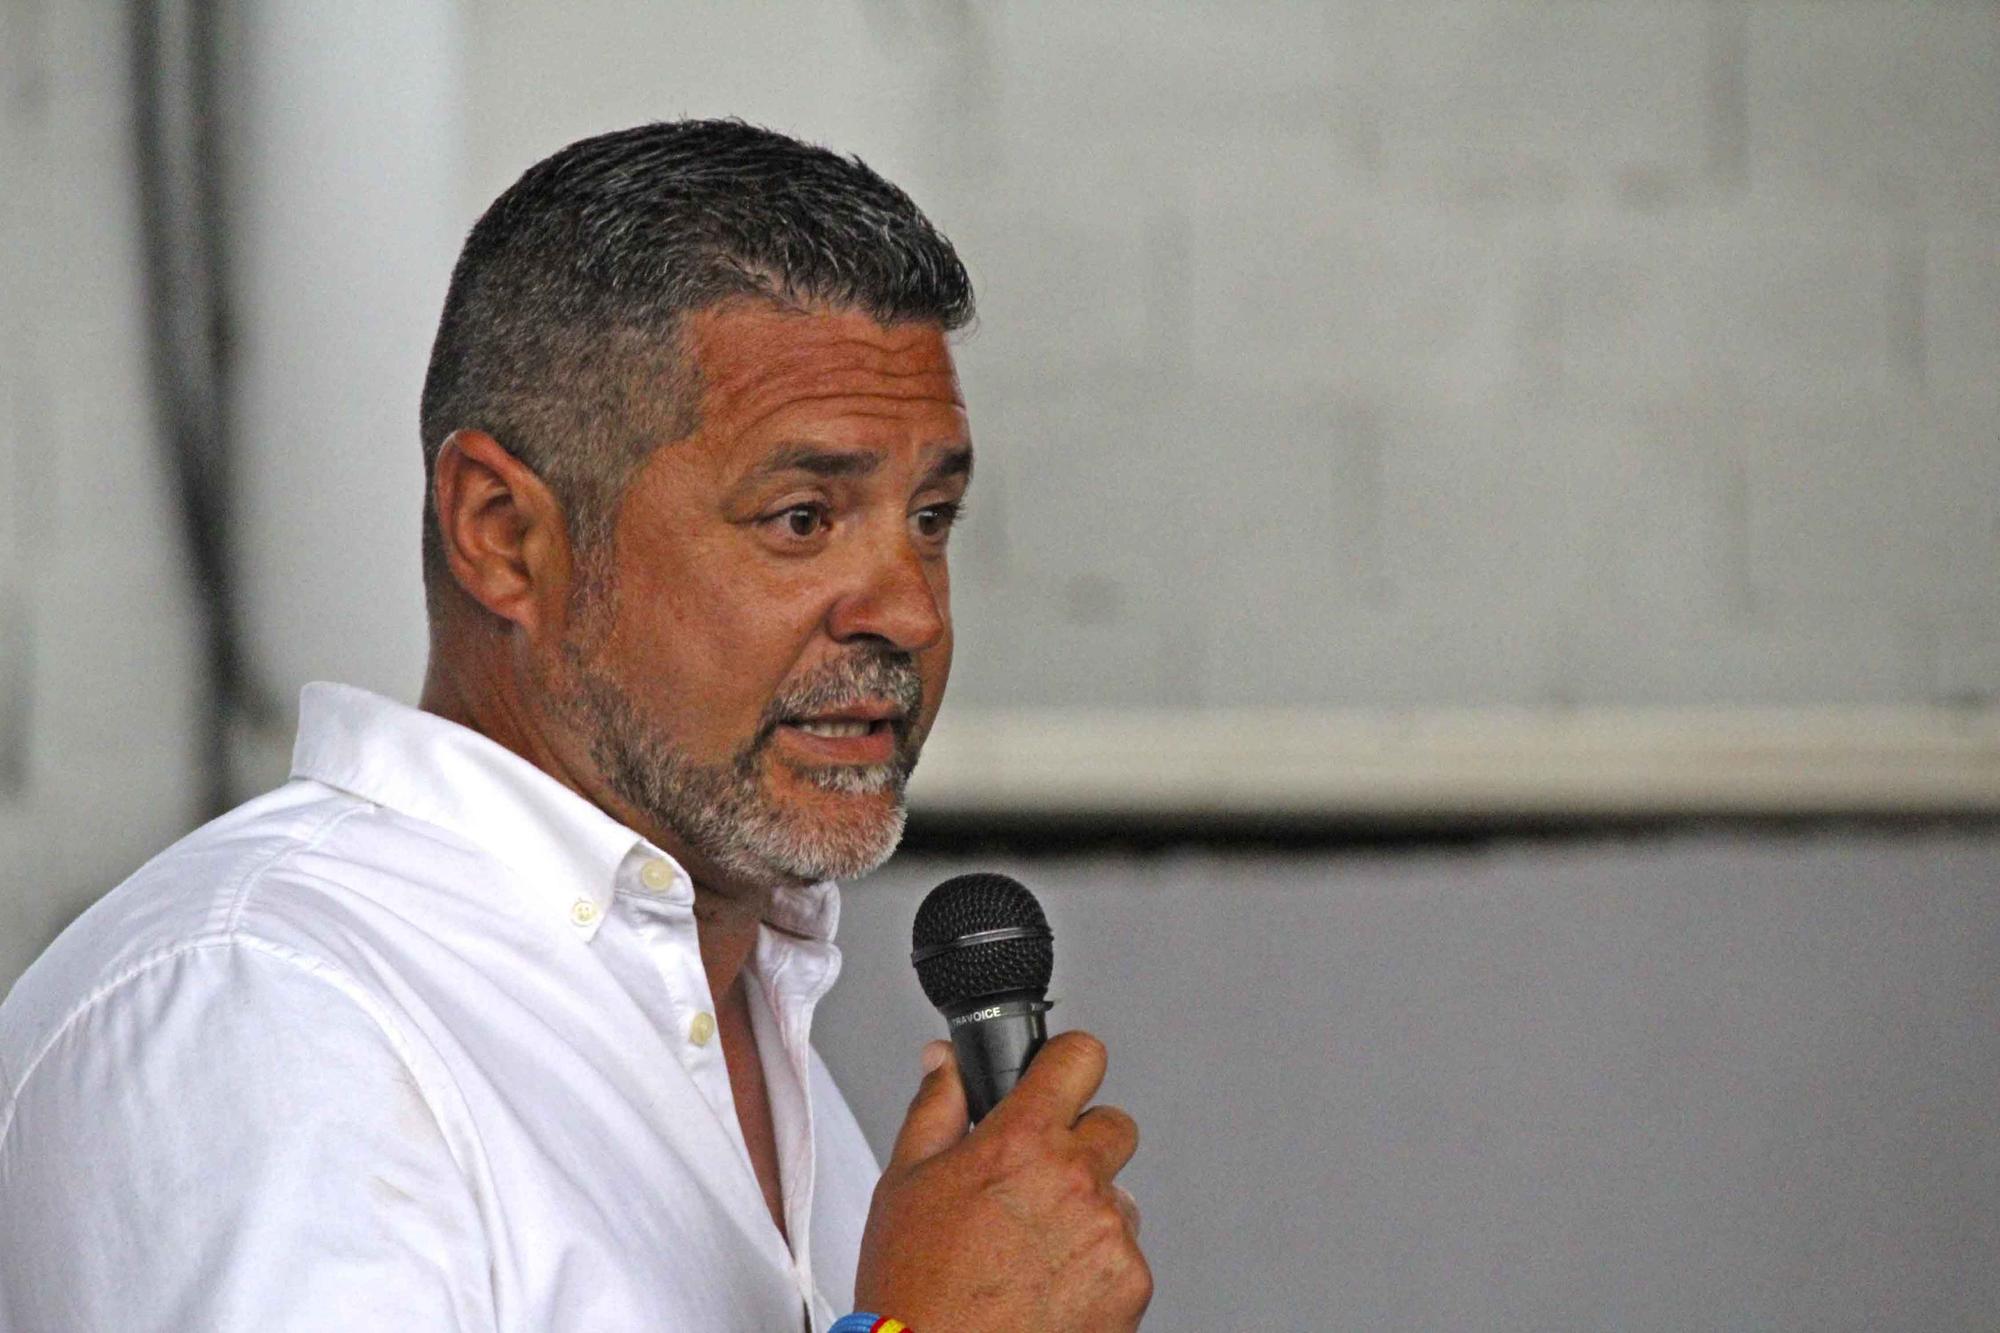 Contigo Sagunto-Puerto presenta su candidatura para las elecciones del 28M